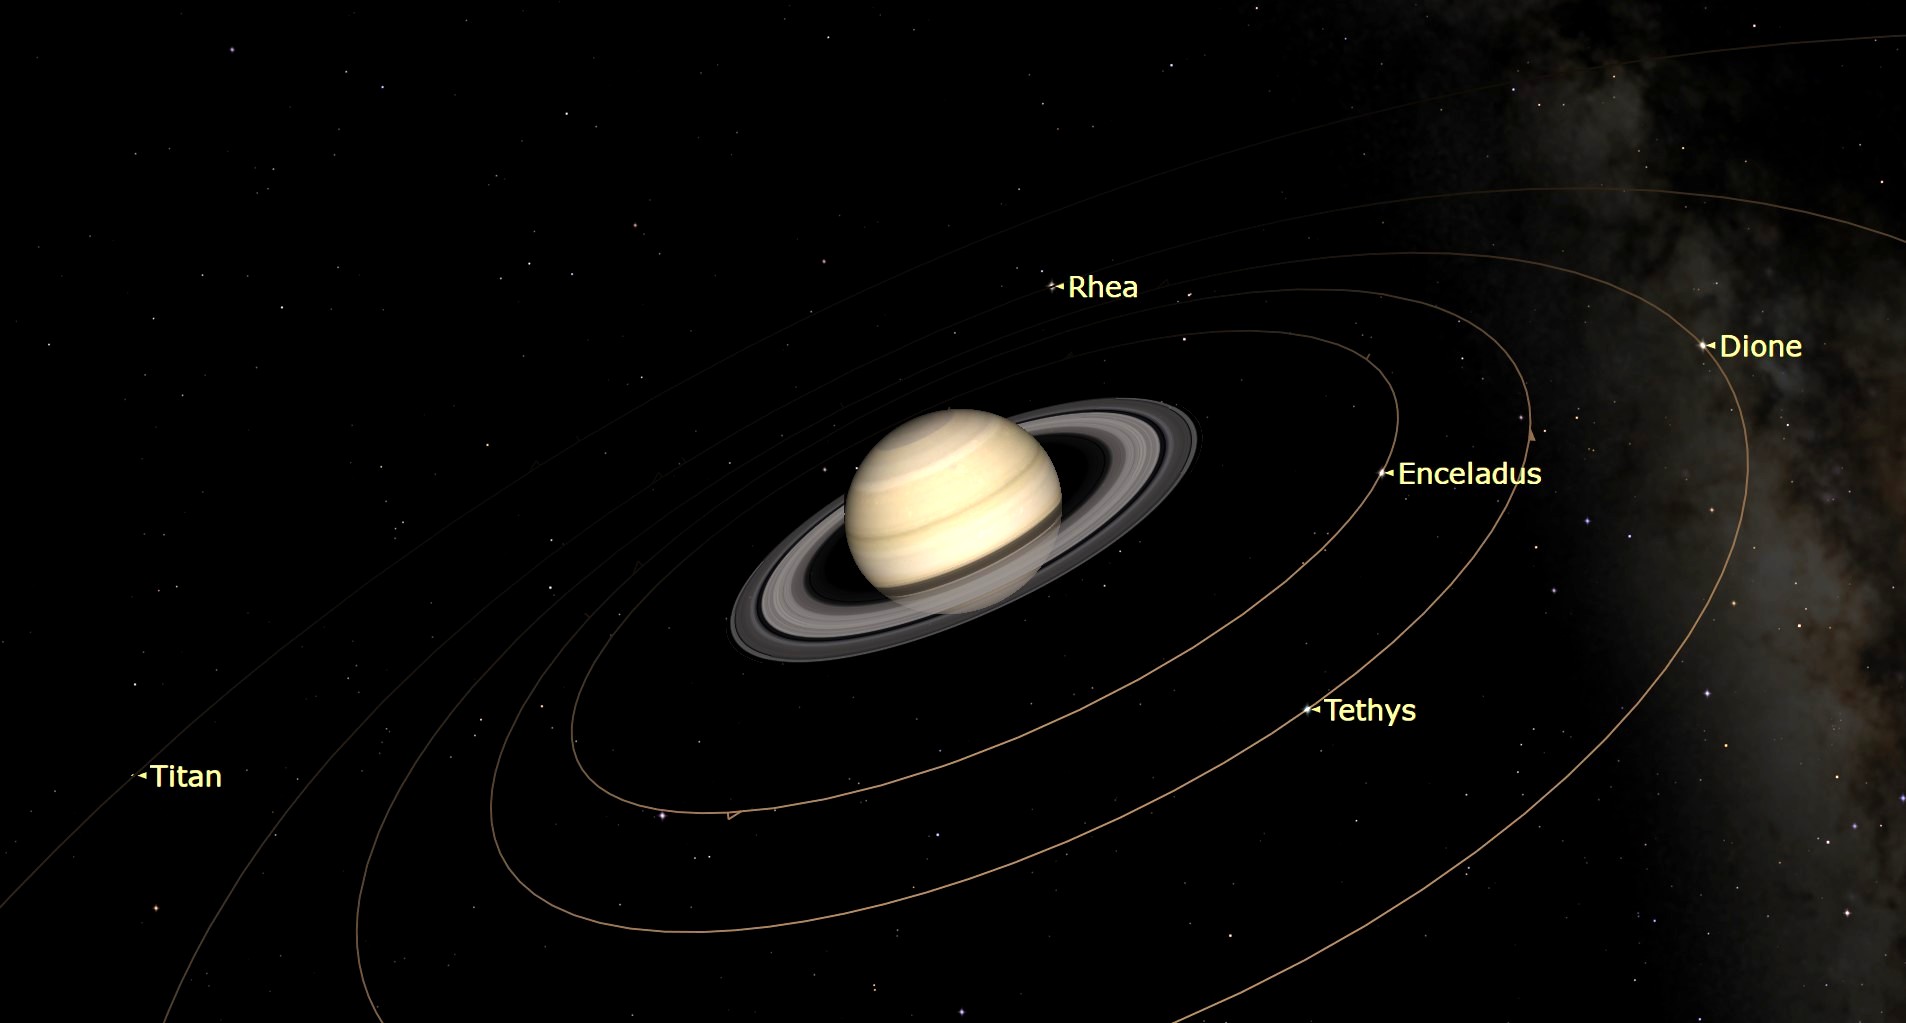 Grafische weergave van Saturnus in een baan rond Titan, Rhea, Enceladus, Tethys en Dione.